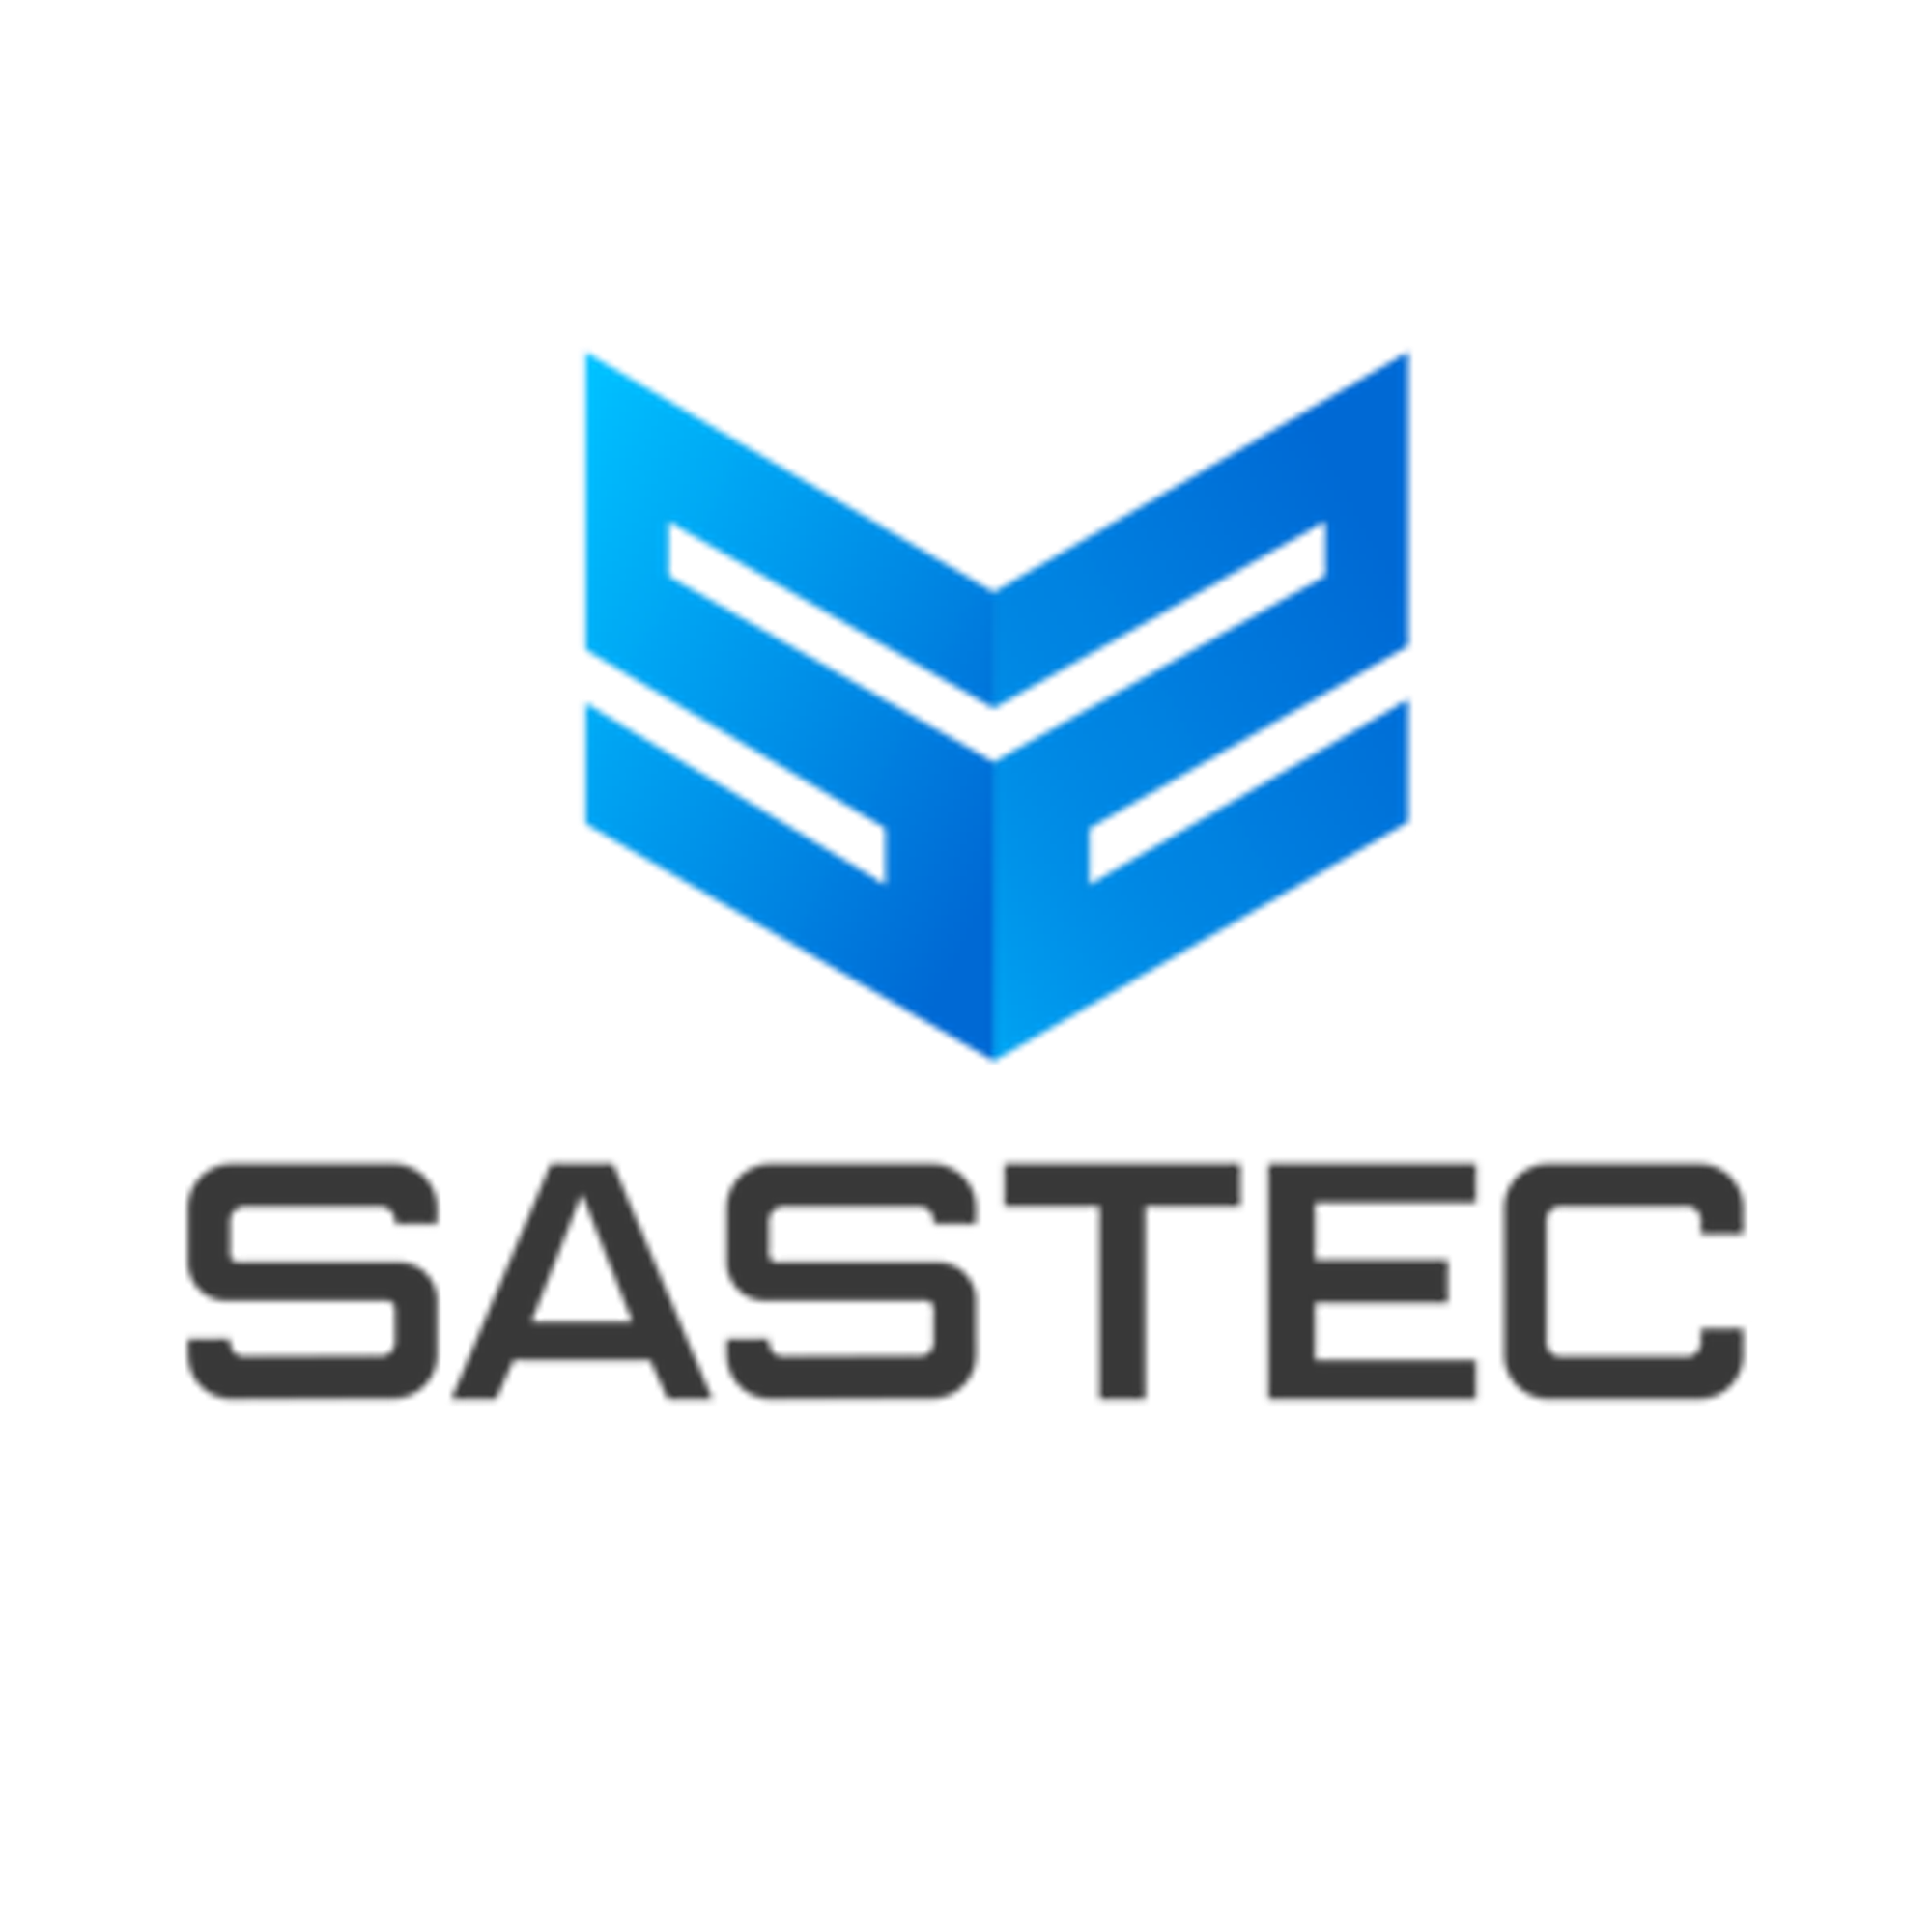 Sastec Group-Ensemble, concevons l'avenir numérique